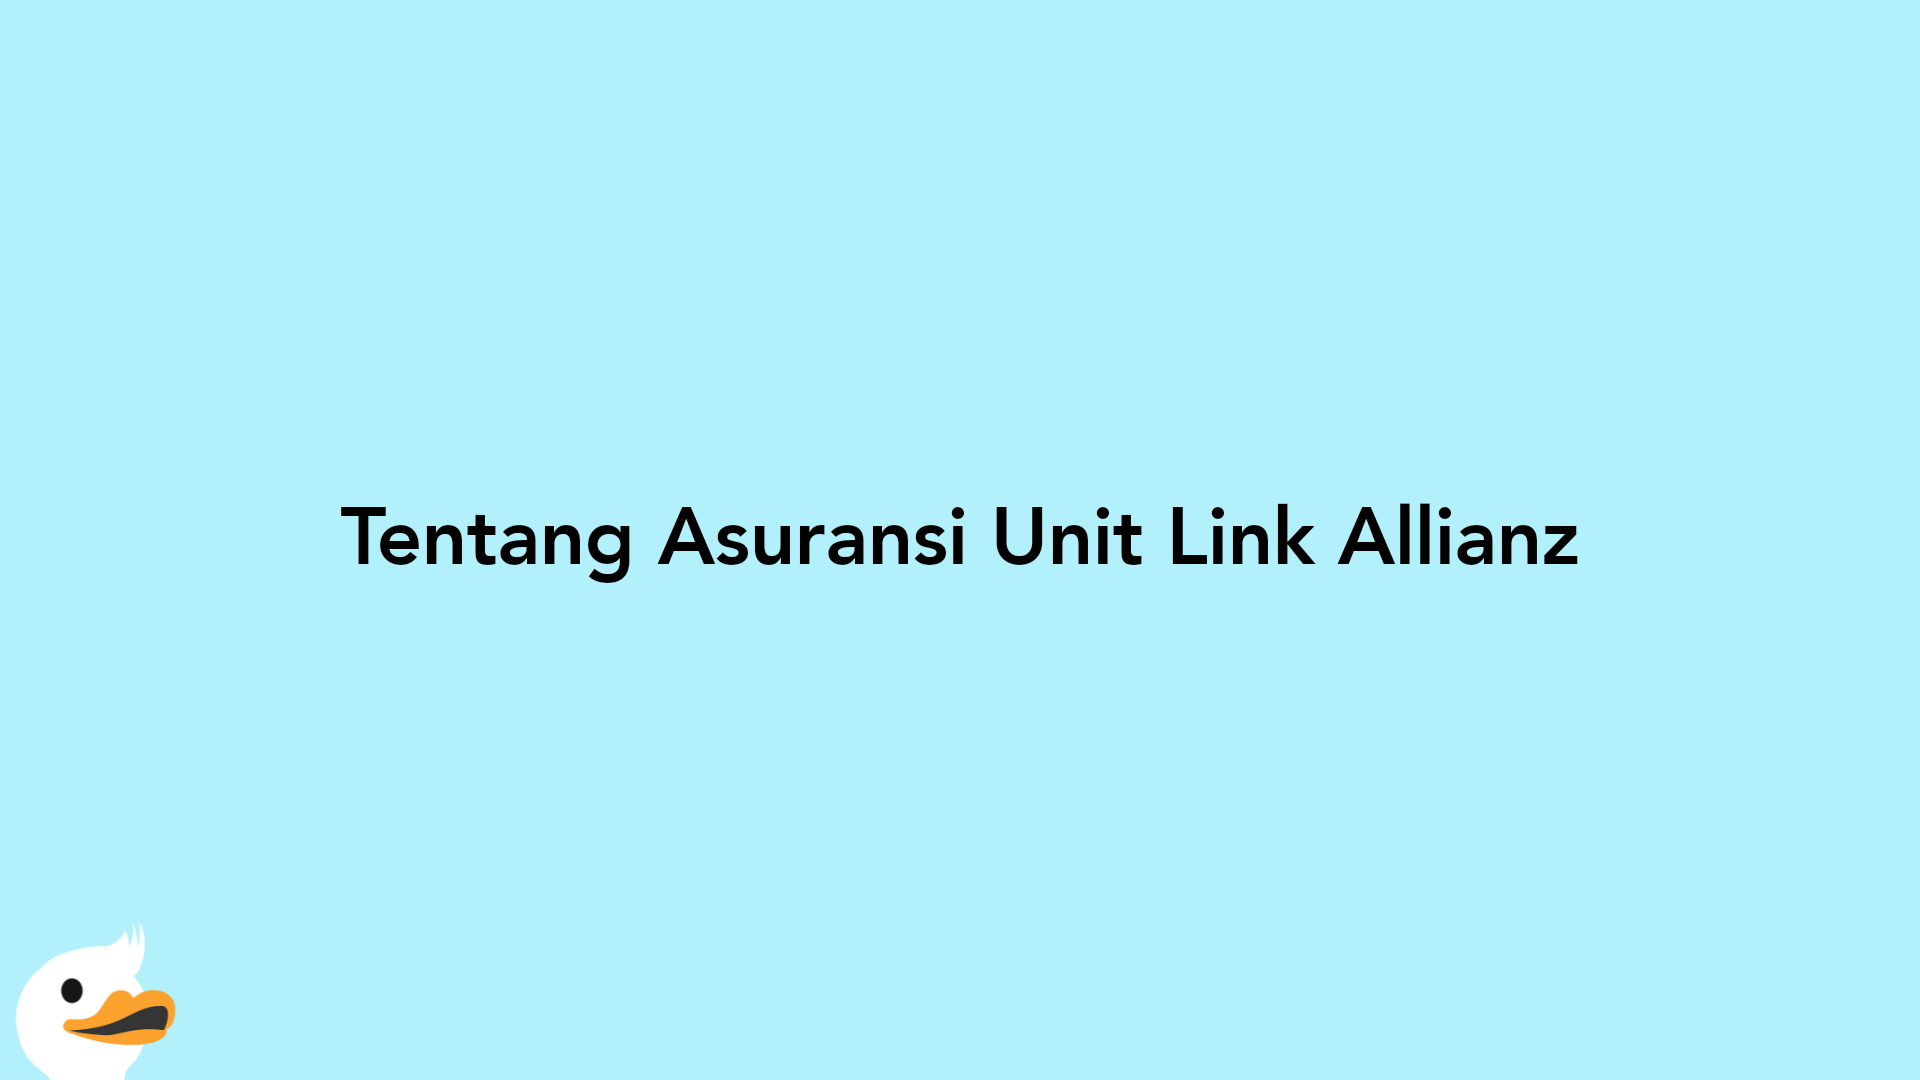 Tentang Asuransi Unit Link Allianz